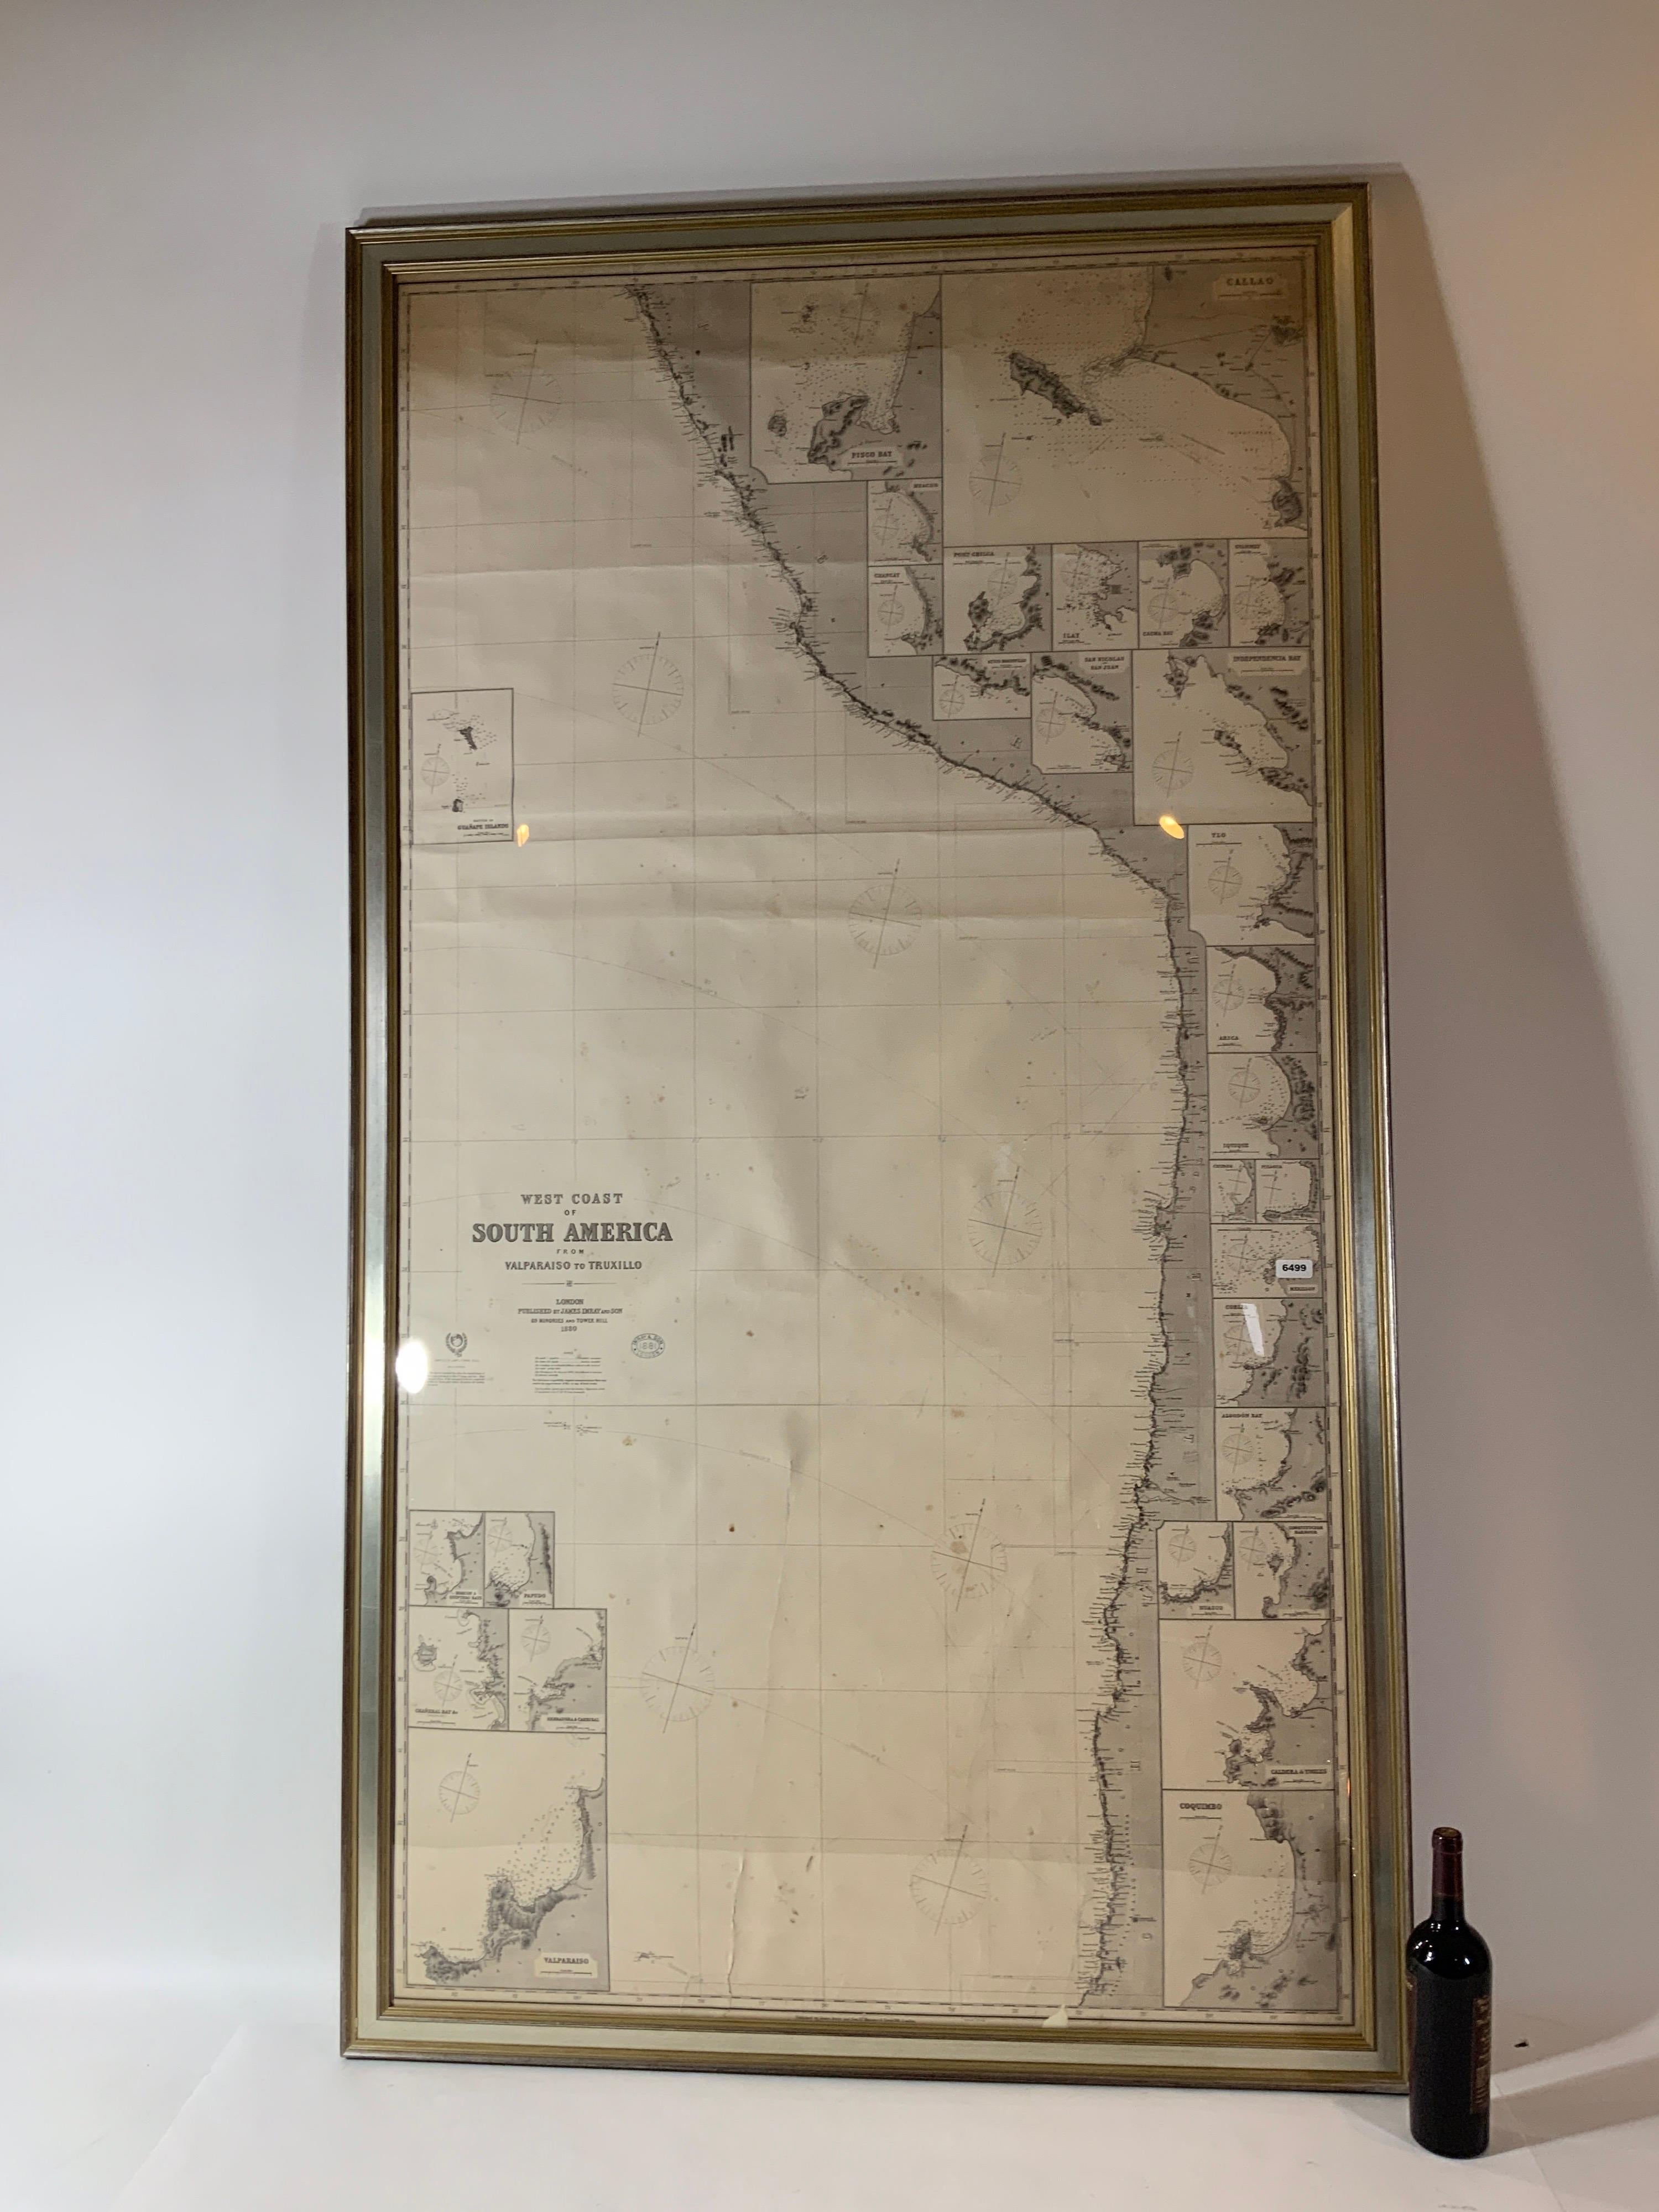 Carte de la côte ouest de l'Amérique du Sud compilée par James F. Imray et publiée en 1880. La carte représente la côte ouest de Valparaiso à Truxillo. Comprend les villes situées le long de la côte, y compris les îles Guanape. Une pièce massive et